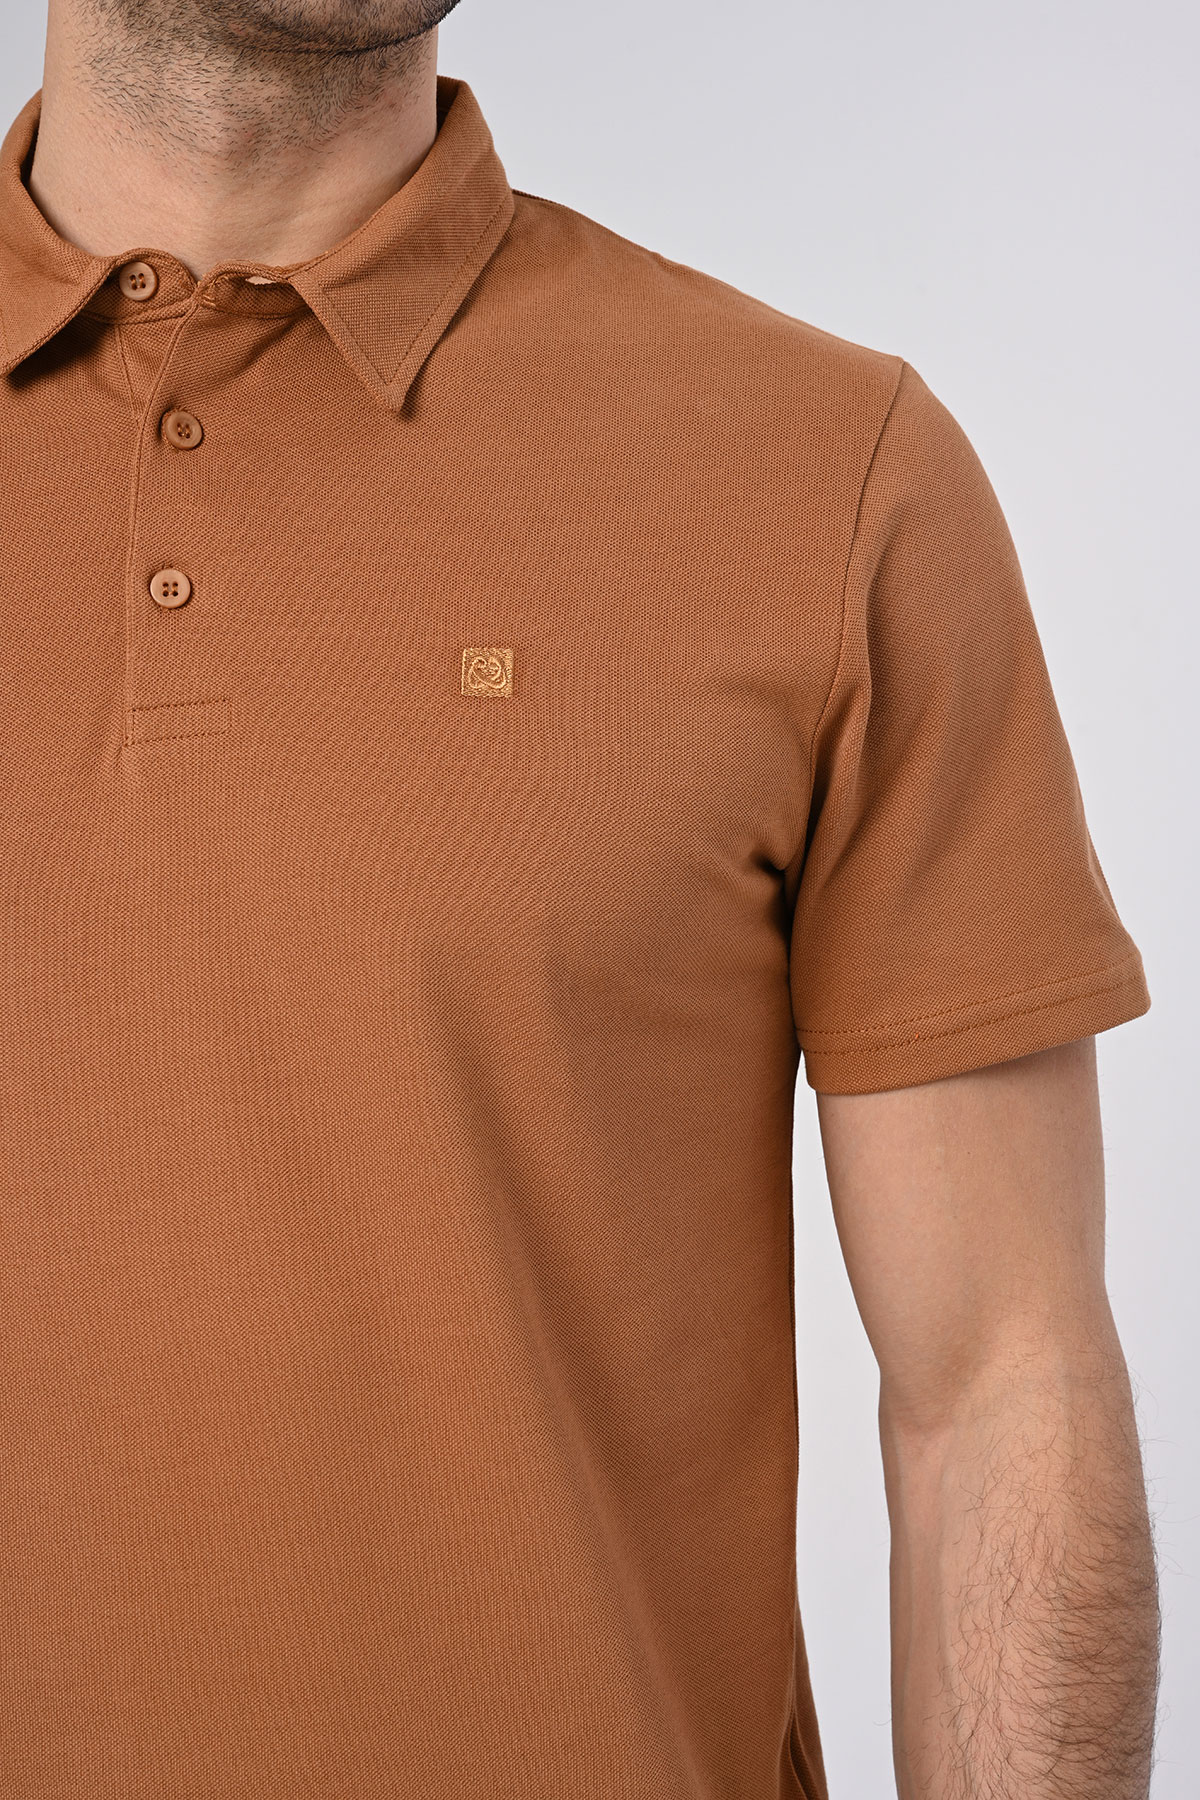 Vav Tasarım Punto Baskılı Pamuk Polo Yaka Kahverengi T-shirt 23'